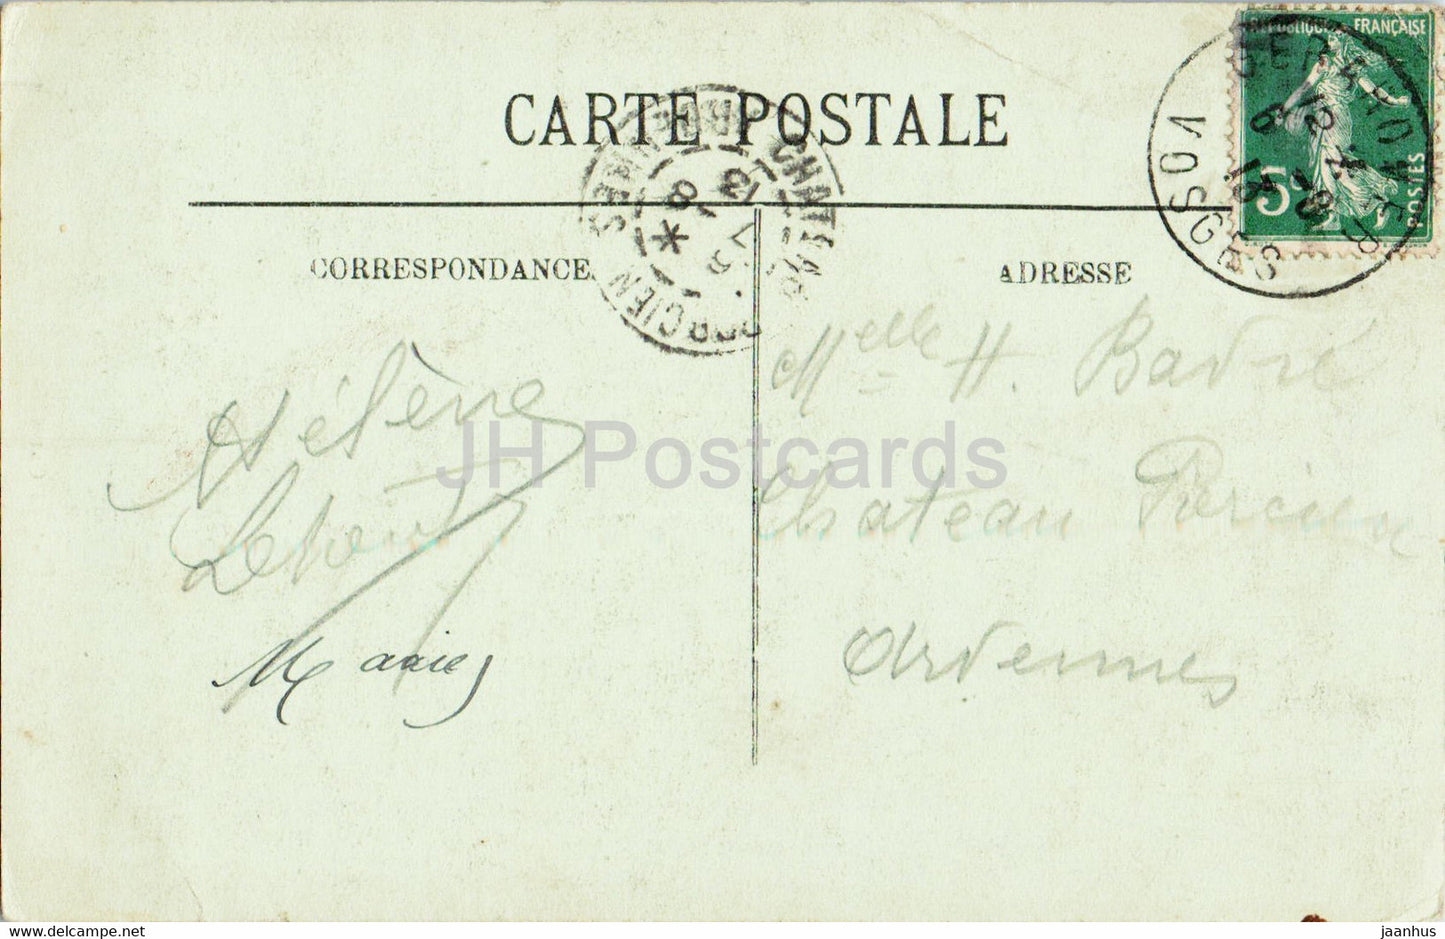 Gerardmer - Saut des Cuves - 280 - old postcard - 1913 - France - used